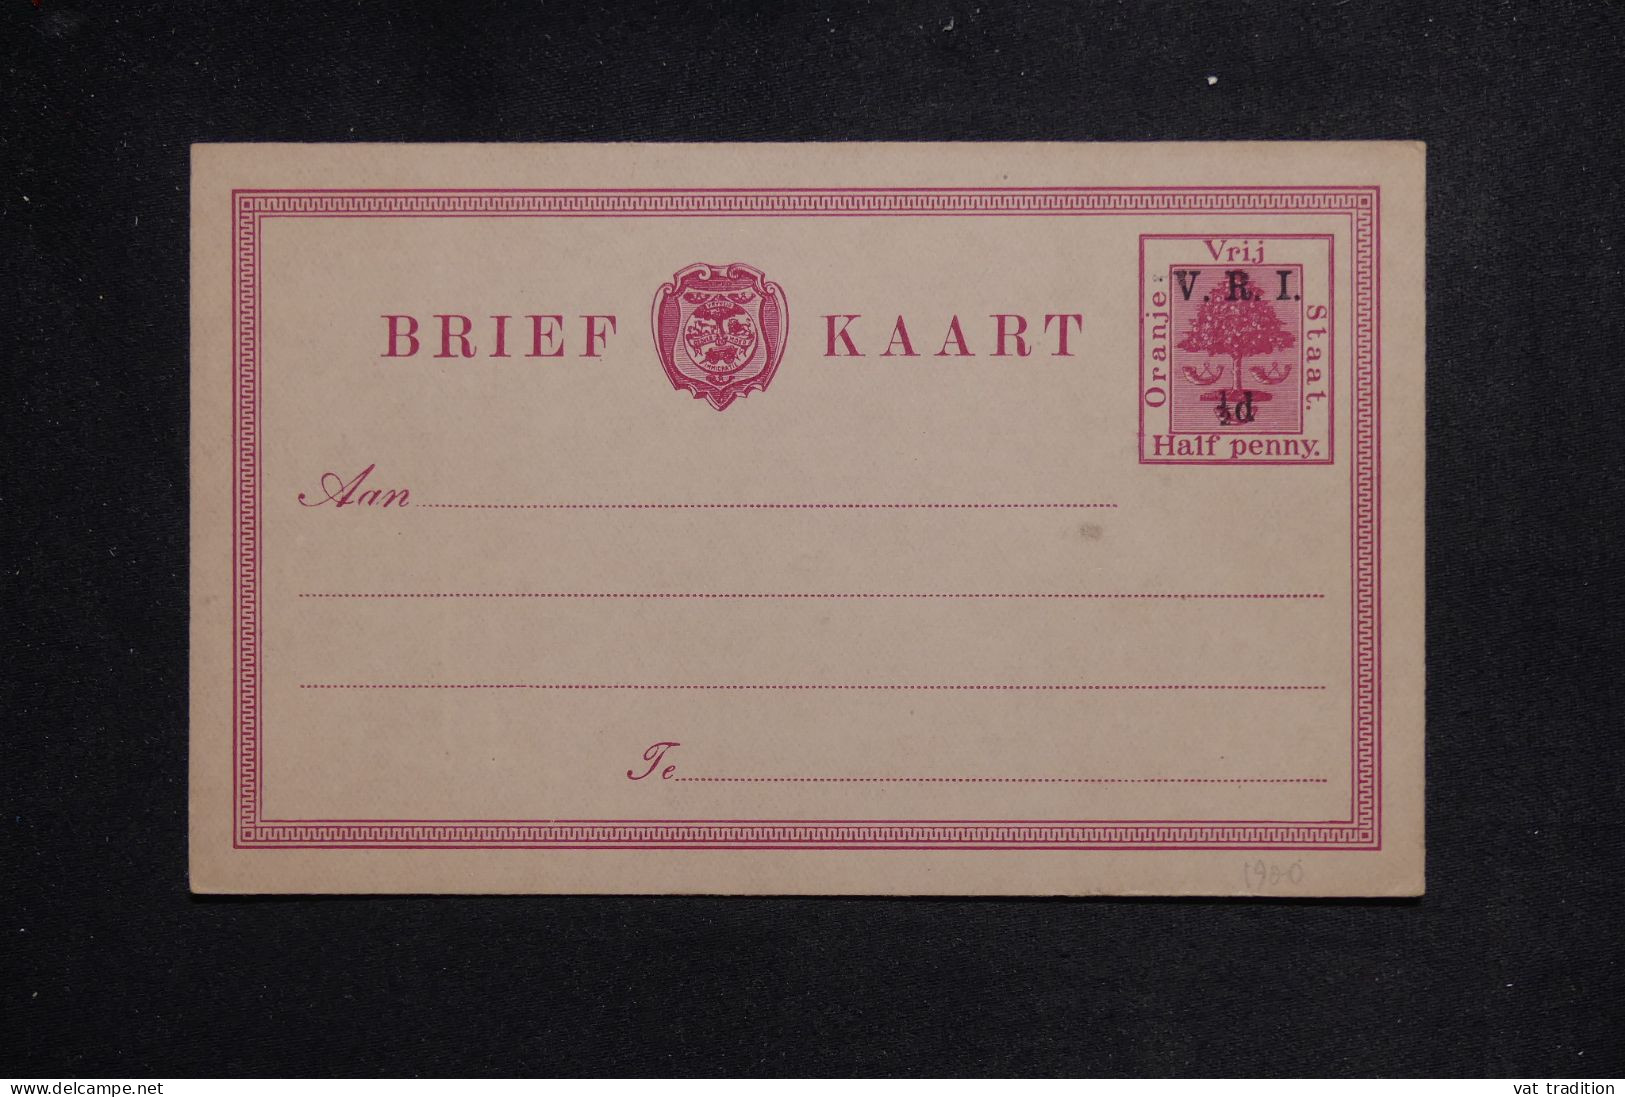 ORANGE - Entier Postal Type  Surchargé , Non Circulé - L 151149 - Oranje Vrijstaat (1868-1909)